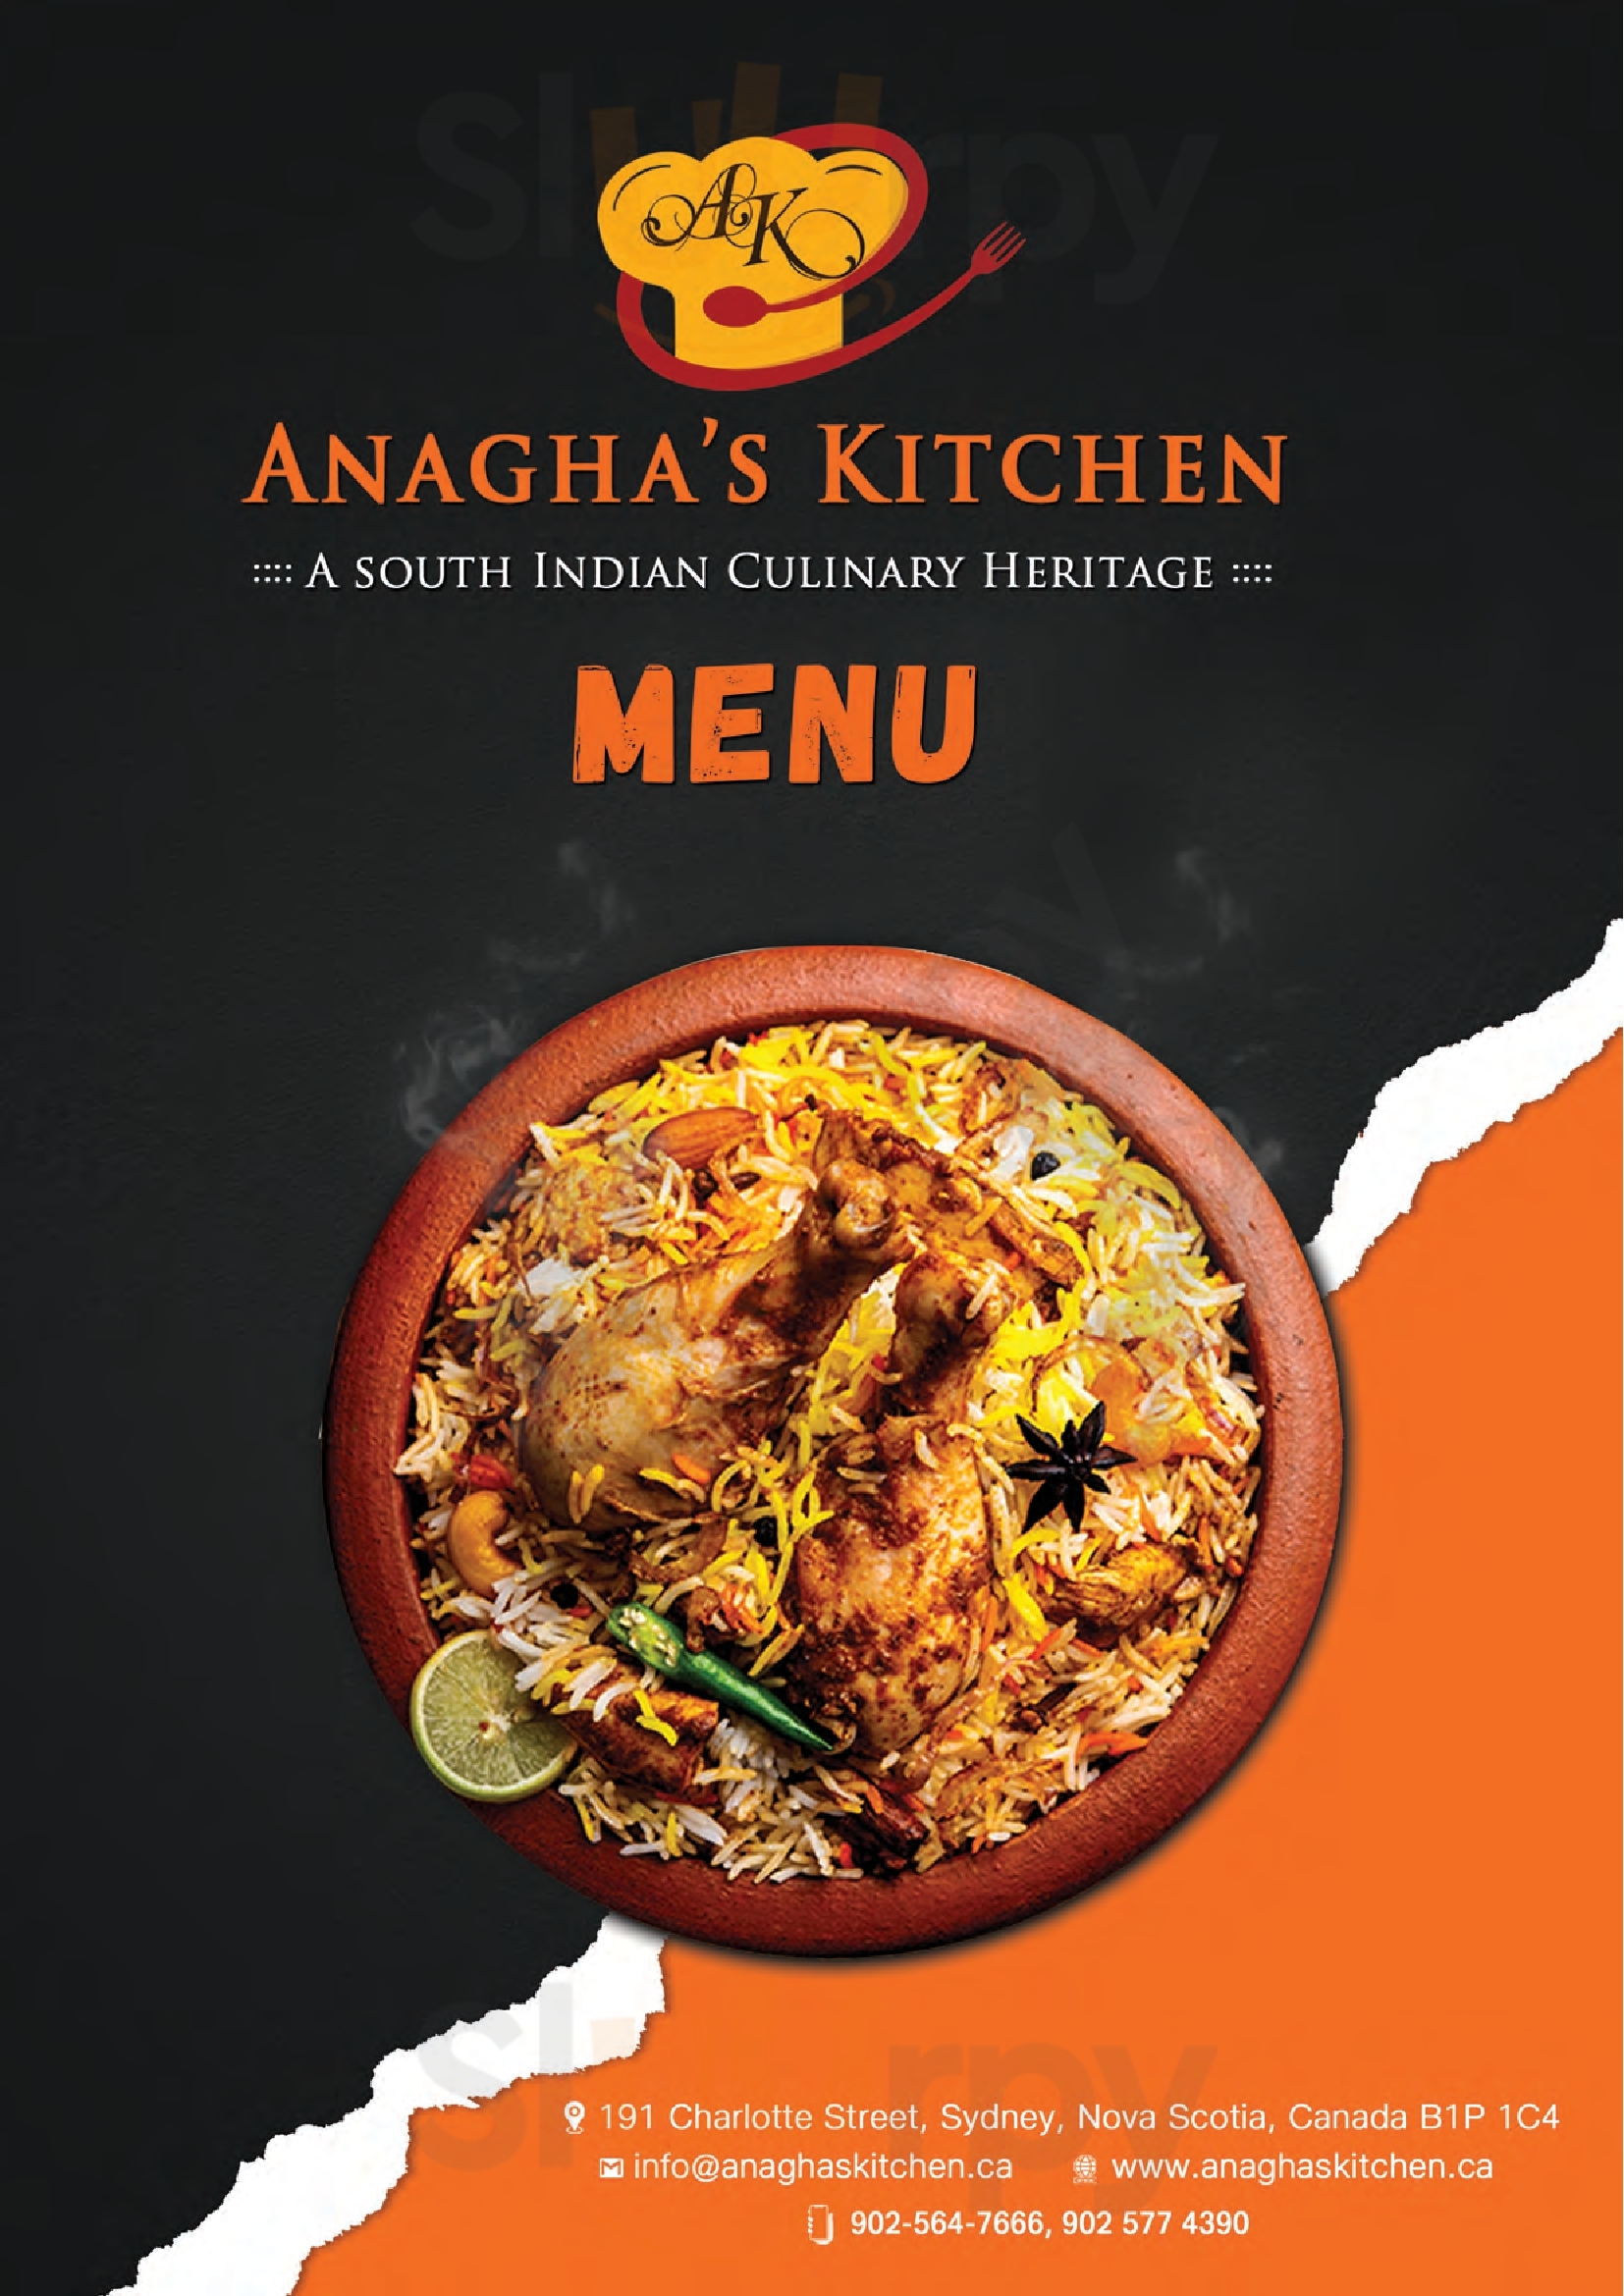 Anagha's Kitchen Sydney Menu - 1